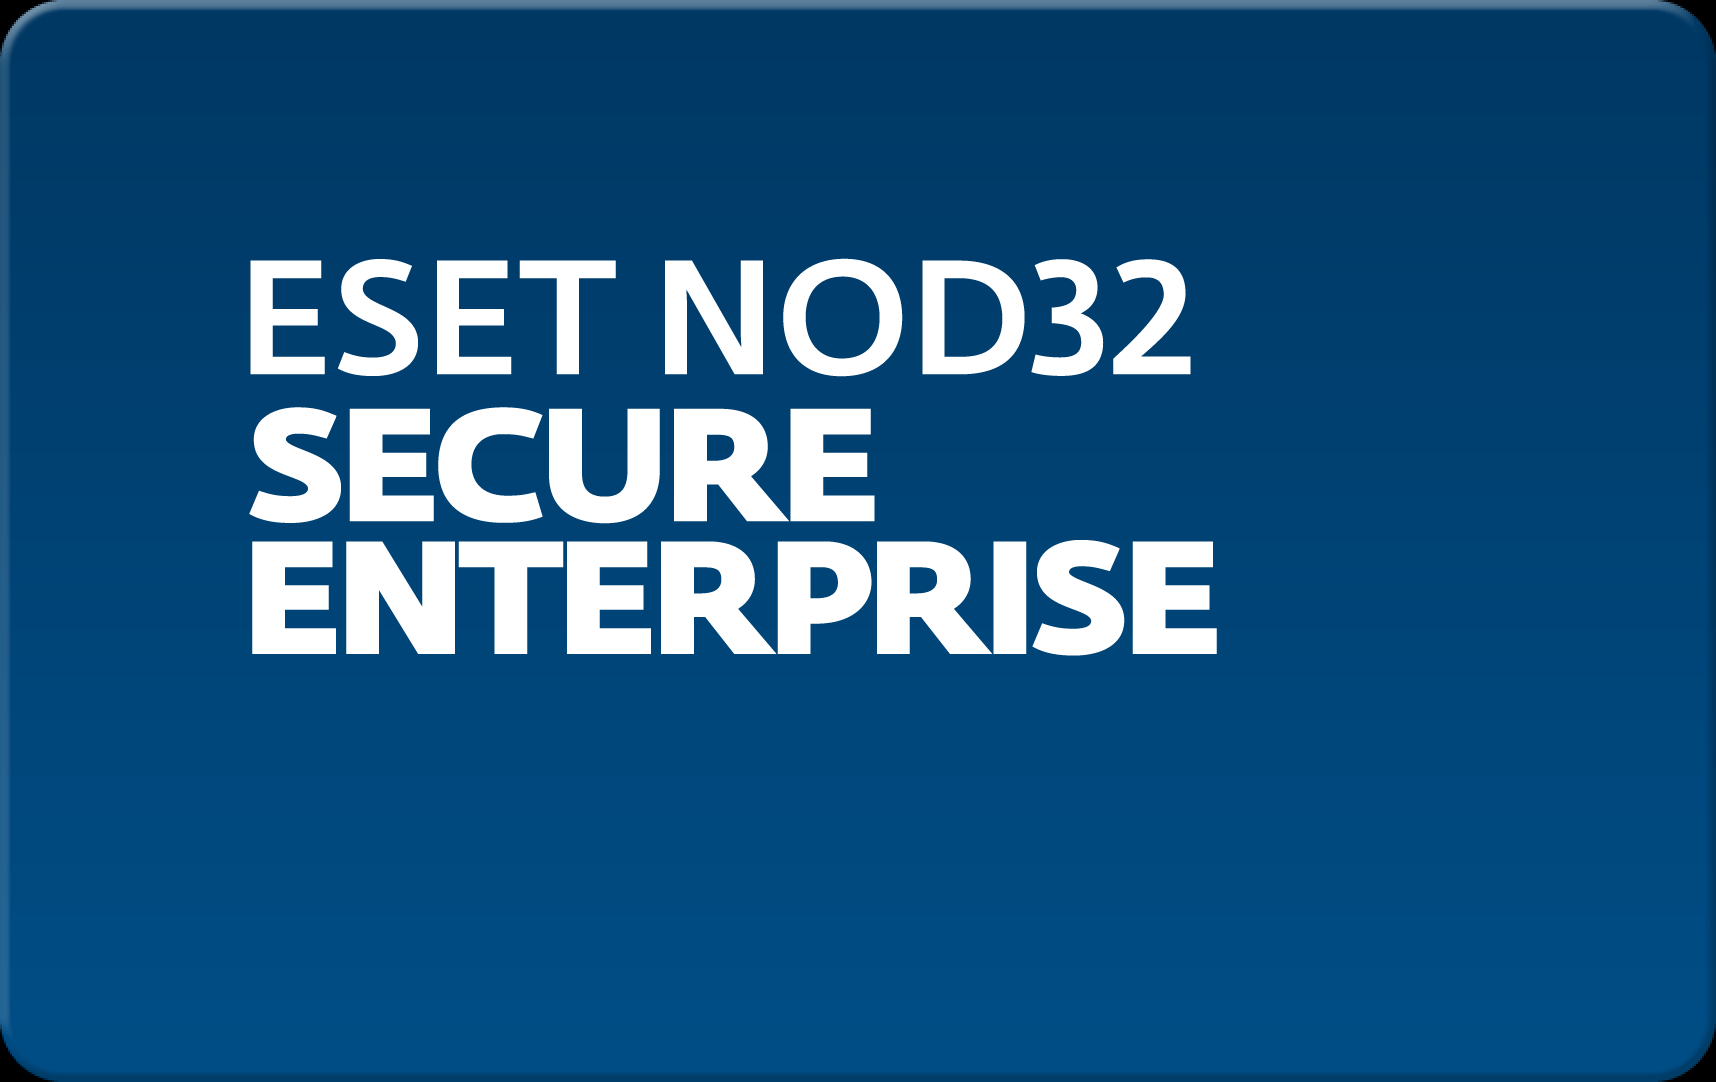        Eset NOD32 Secure Enterprise  159 